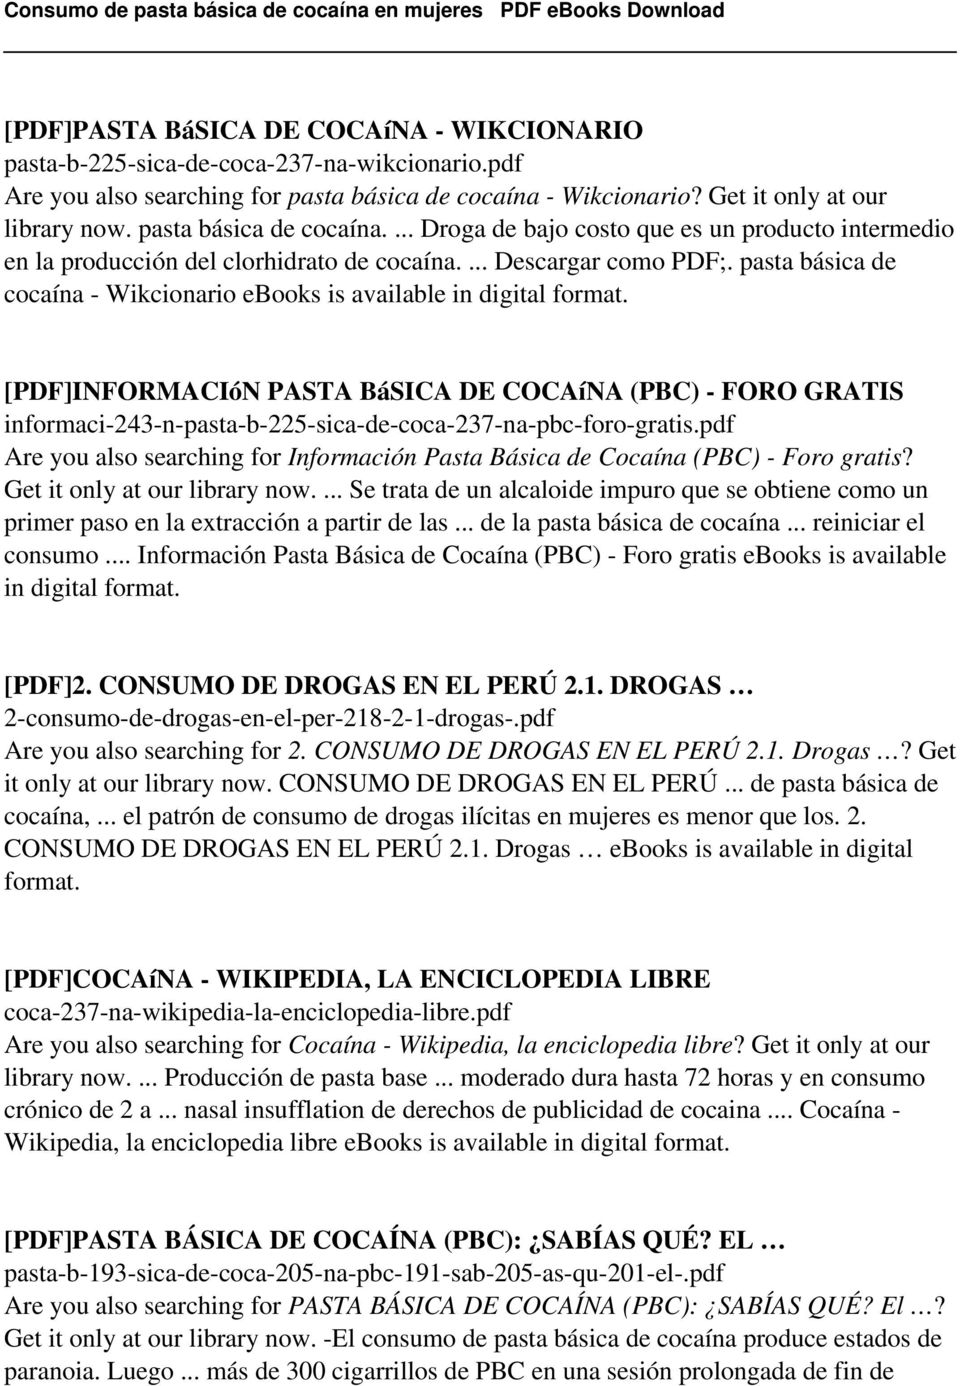 pasta básica de cocaína - Wikcionario ebooks is available in [PDF]INFORMACIóN PASTA BáSICA DE COCAíNA (PBC) - FORO GRATIS informaci-243-n-pasta-b-225-sica-de-coca-237-na-pbc-foro-gratis.